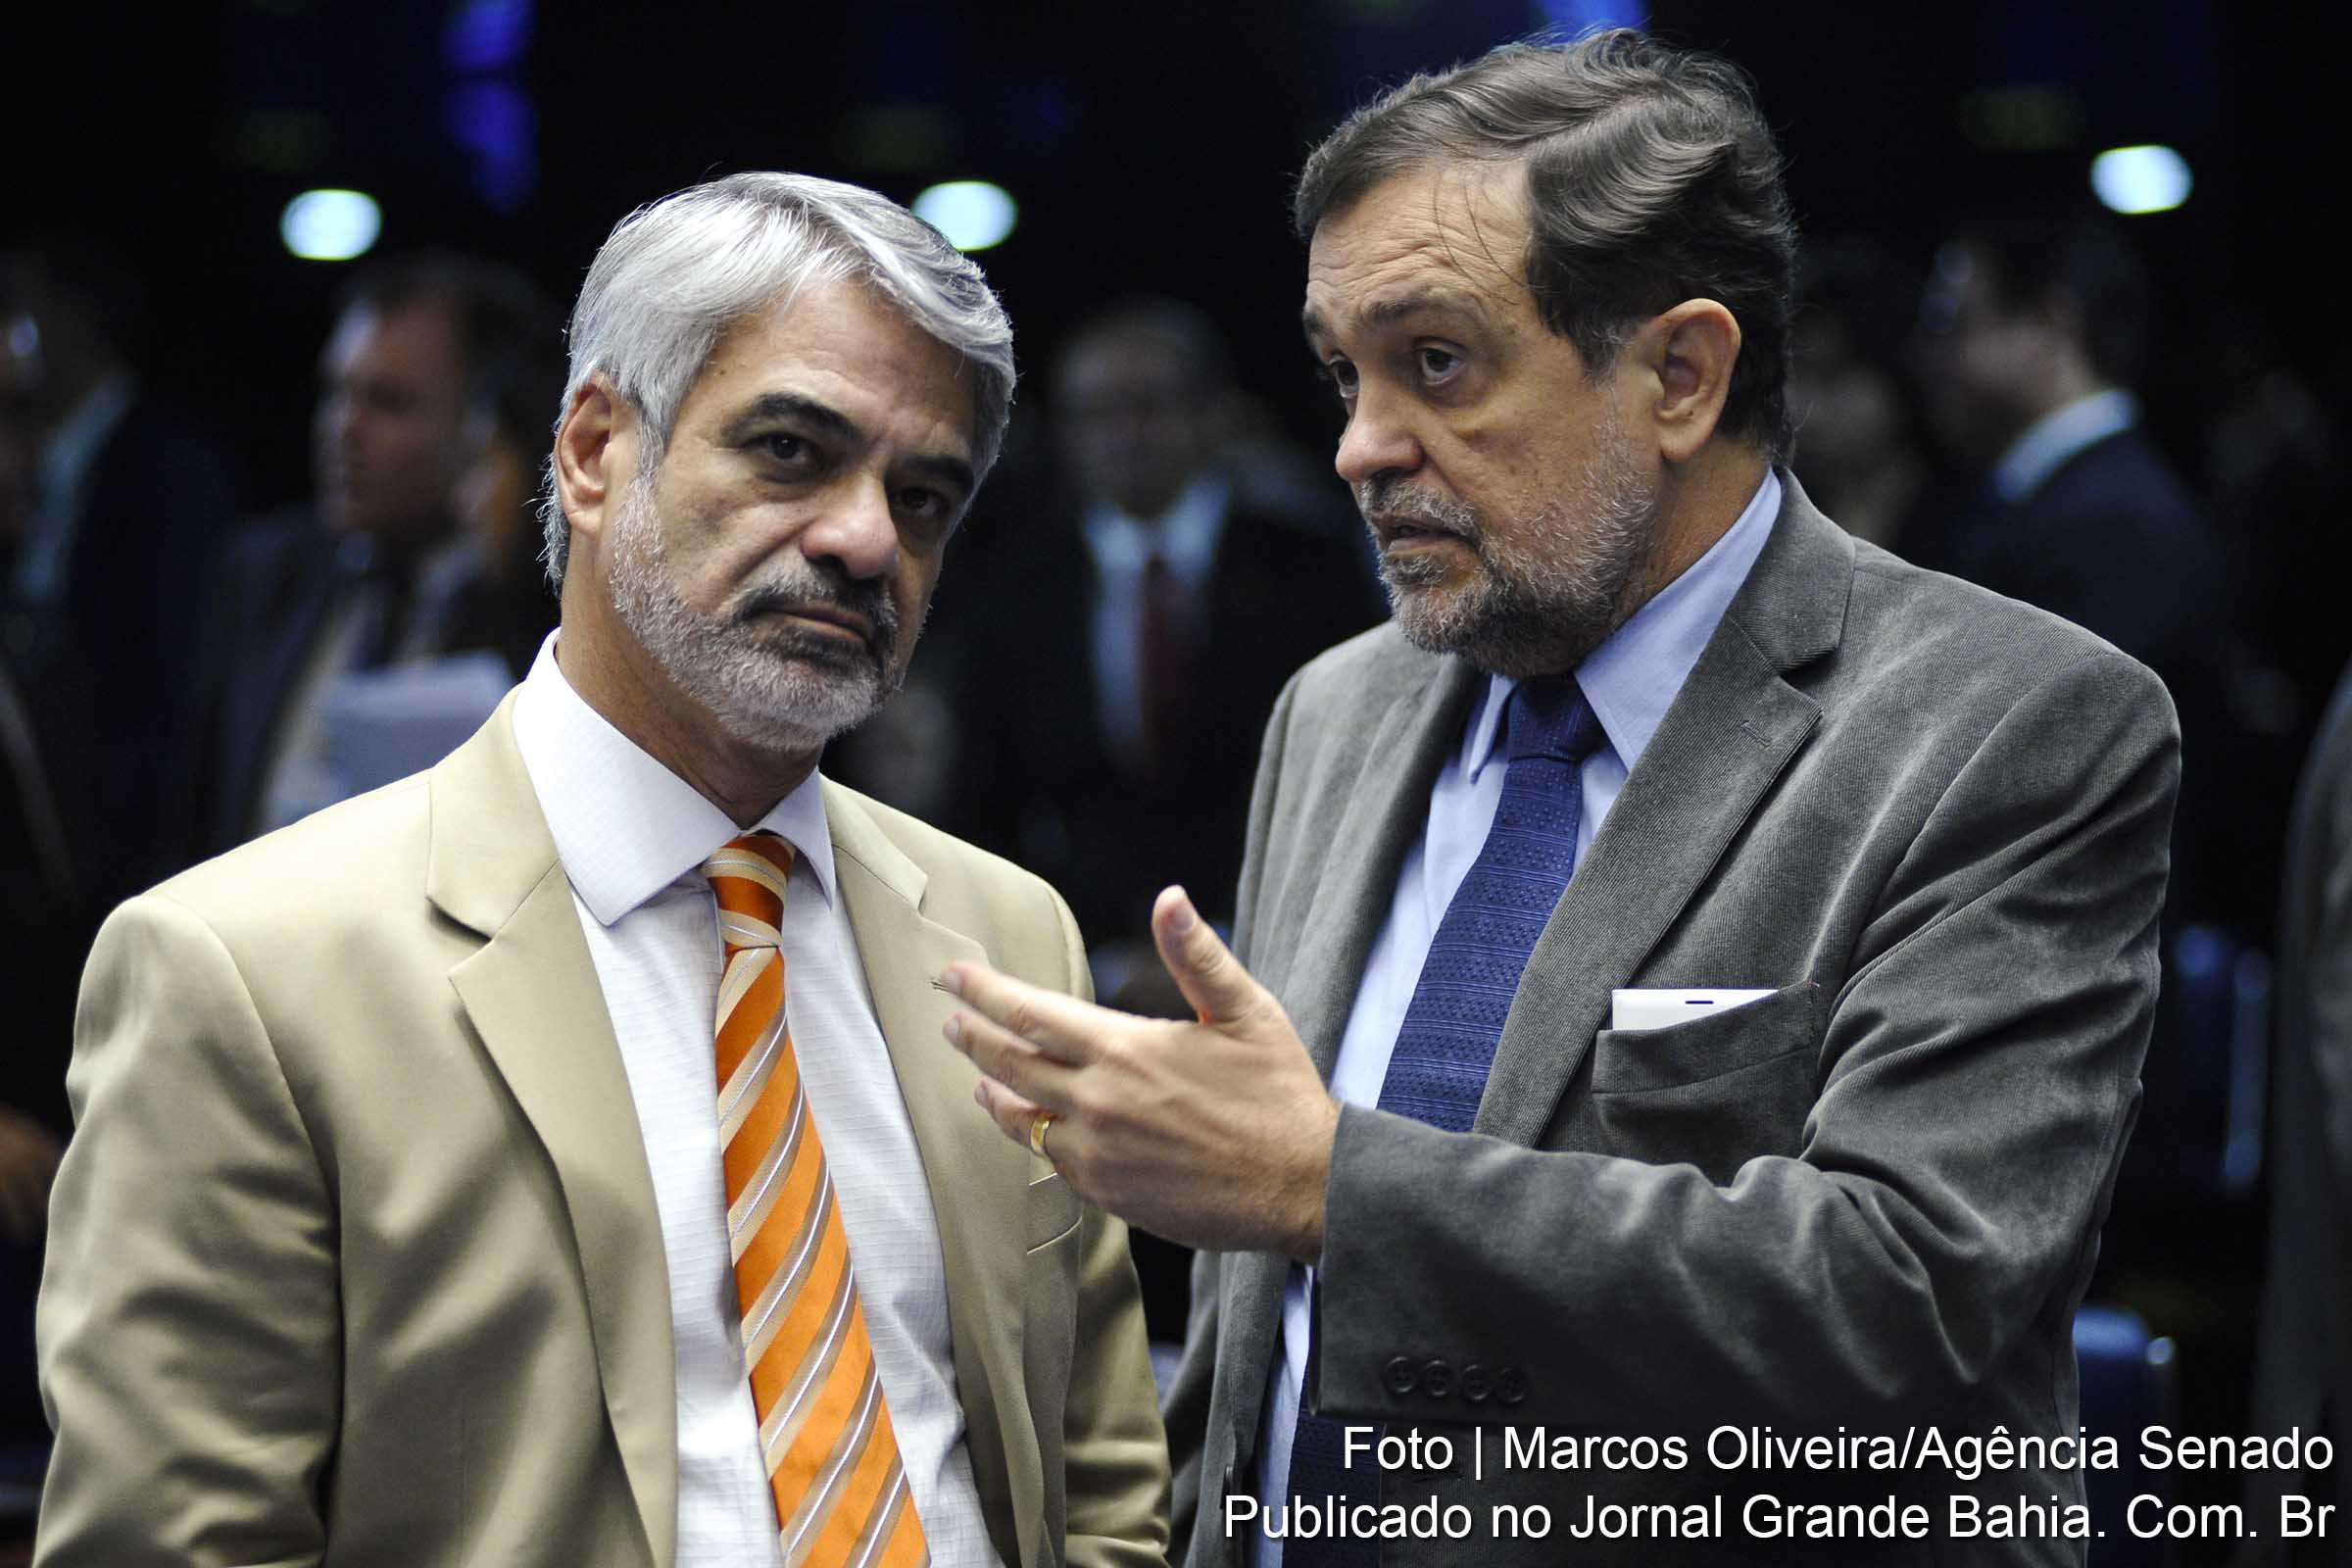 Senadores do Partido dos Trabalhadores Humberto Costa (PE) e Walter Pinheiro(BA) discutem reforma política.